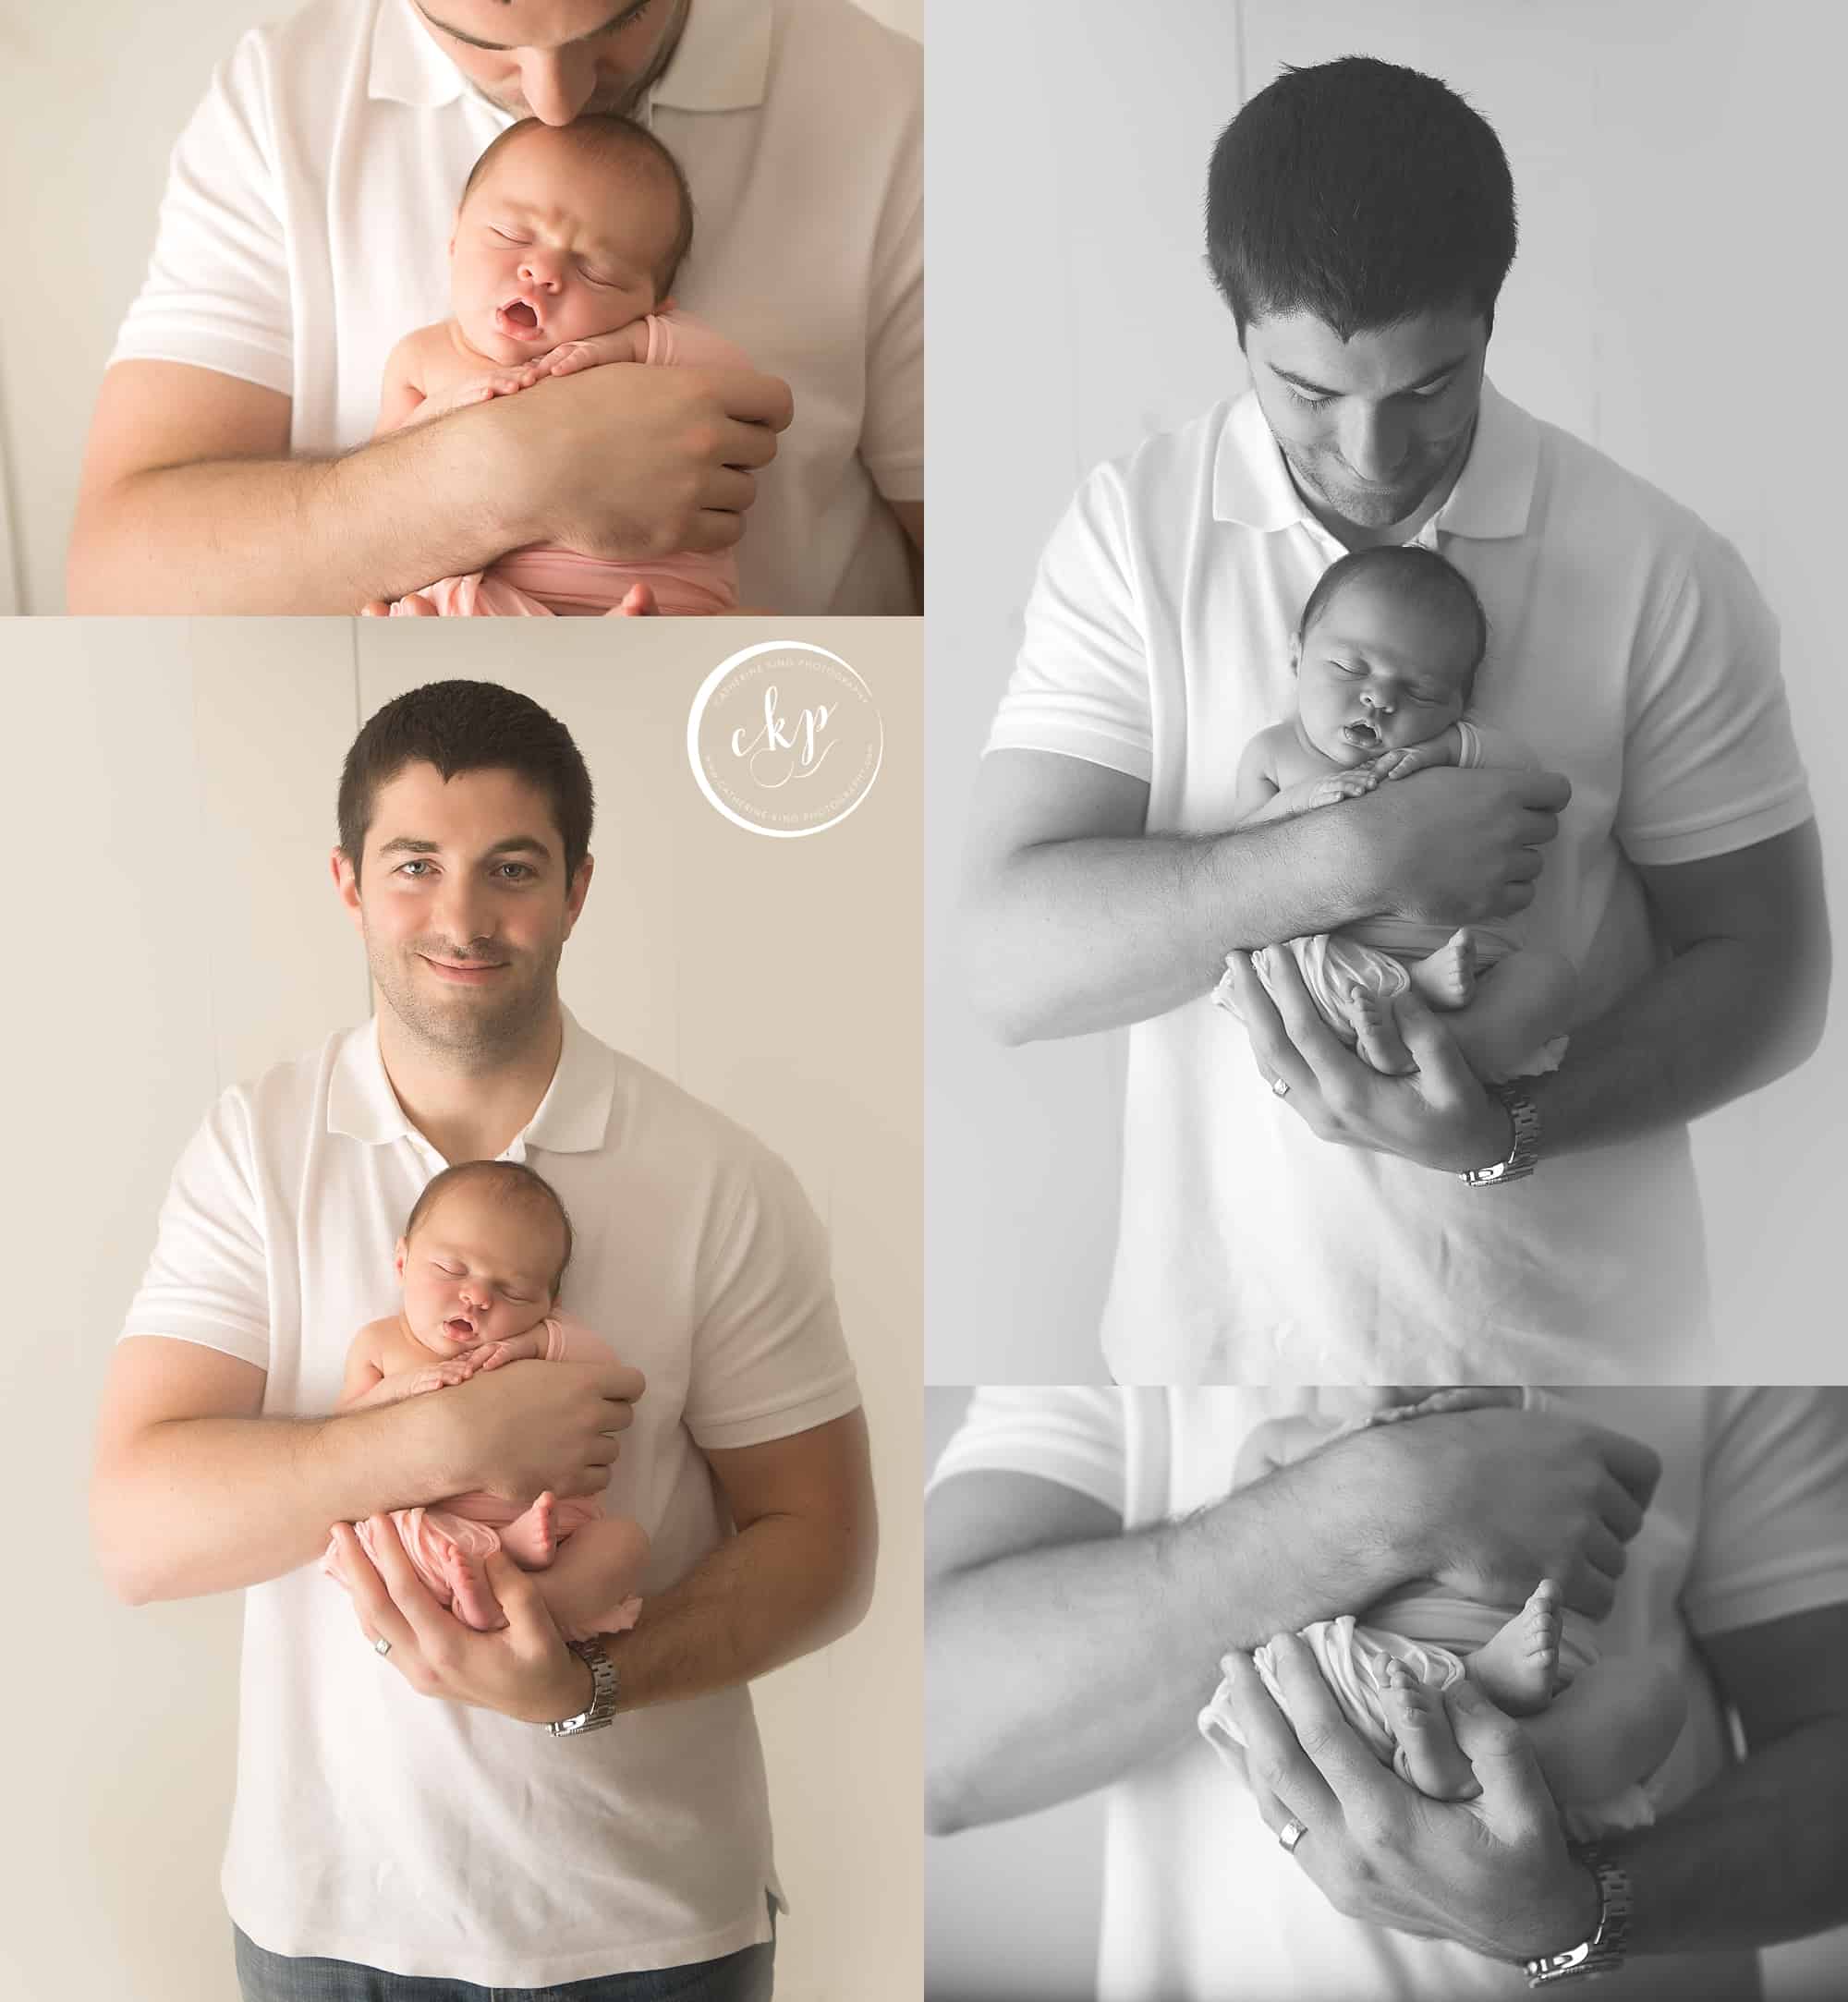 madison ct newborn photography with baby Vaida in CT newborn studio